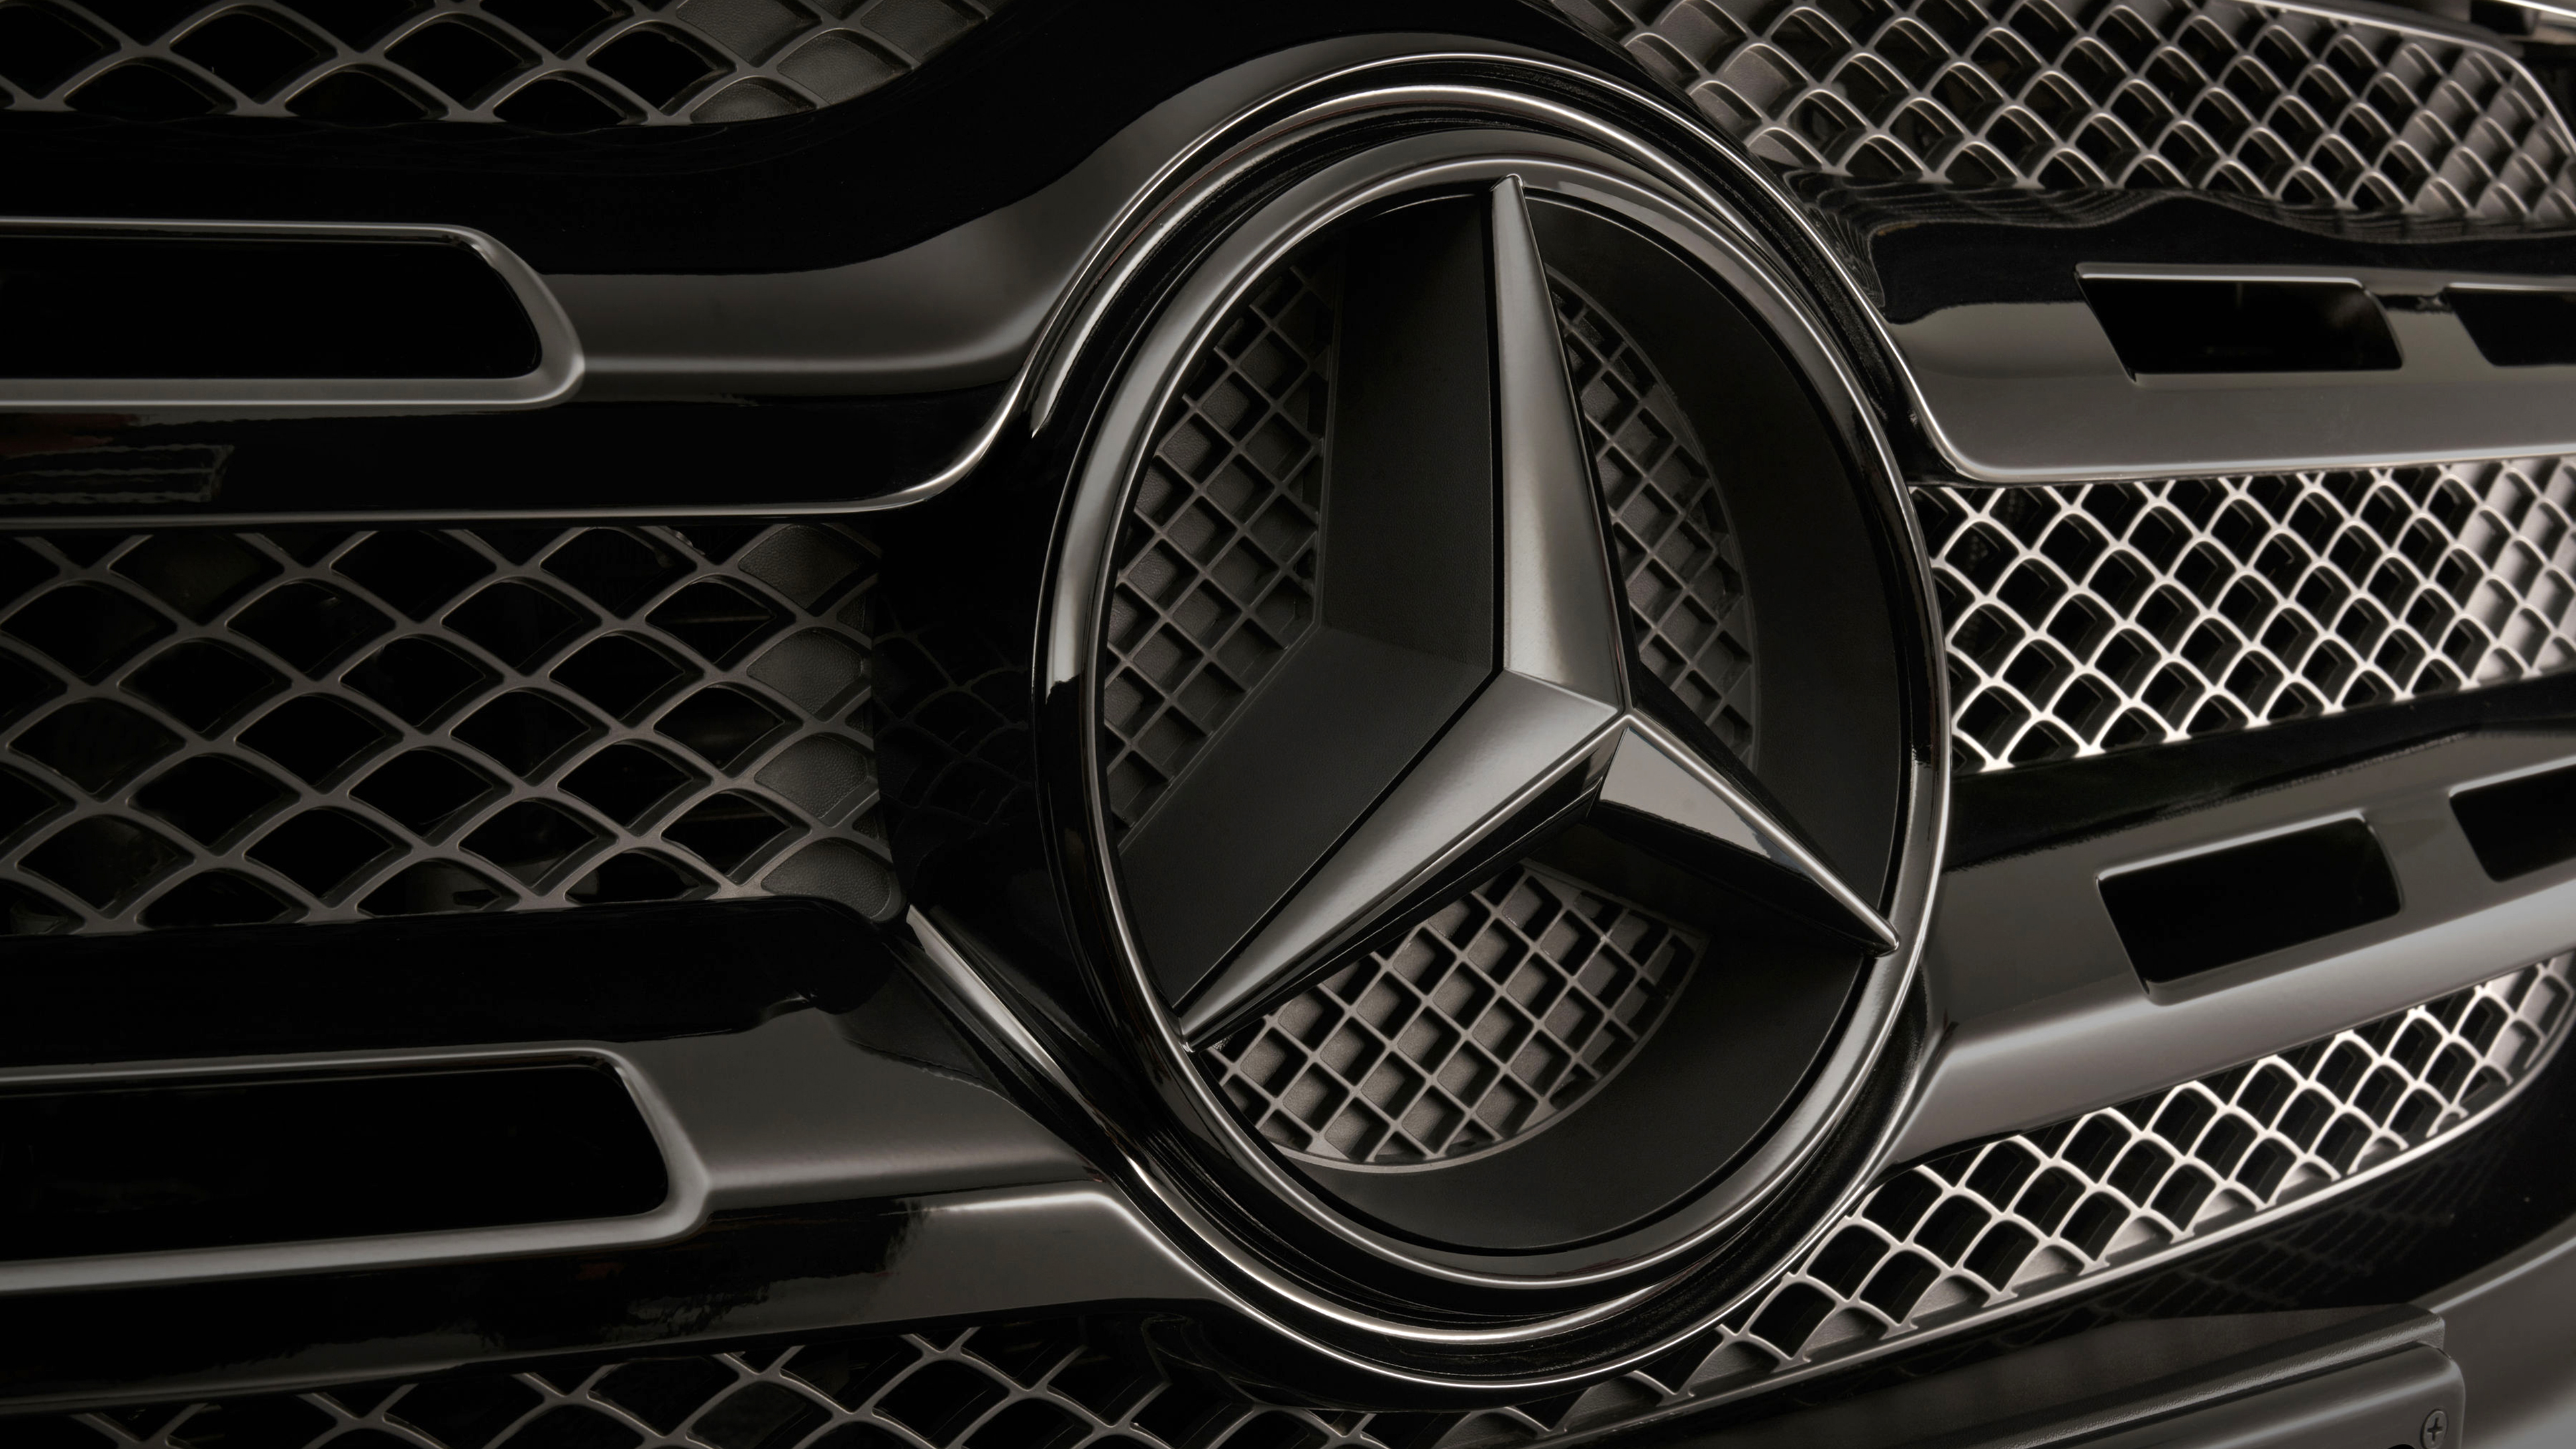 Mercedes-Benz X 350d 4MATIC Power Edition 2019 4K WallpapersMercedes-Benz X 350d 4MATIC Power Edition 2019 4K Wallpapers